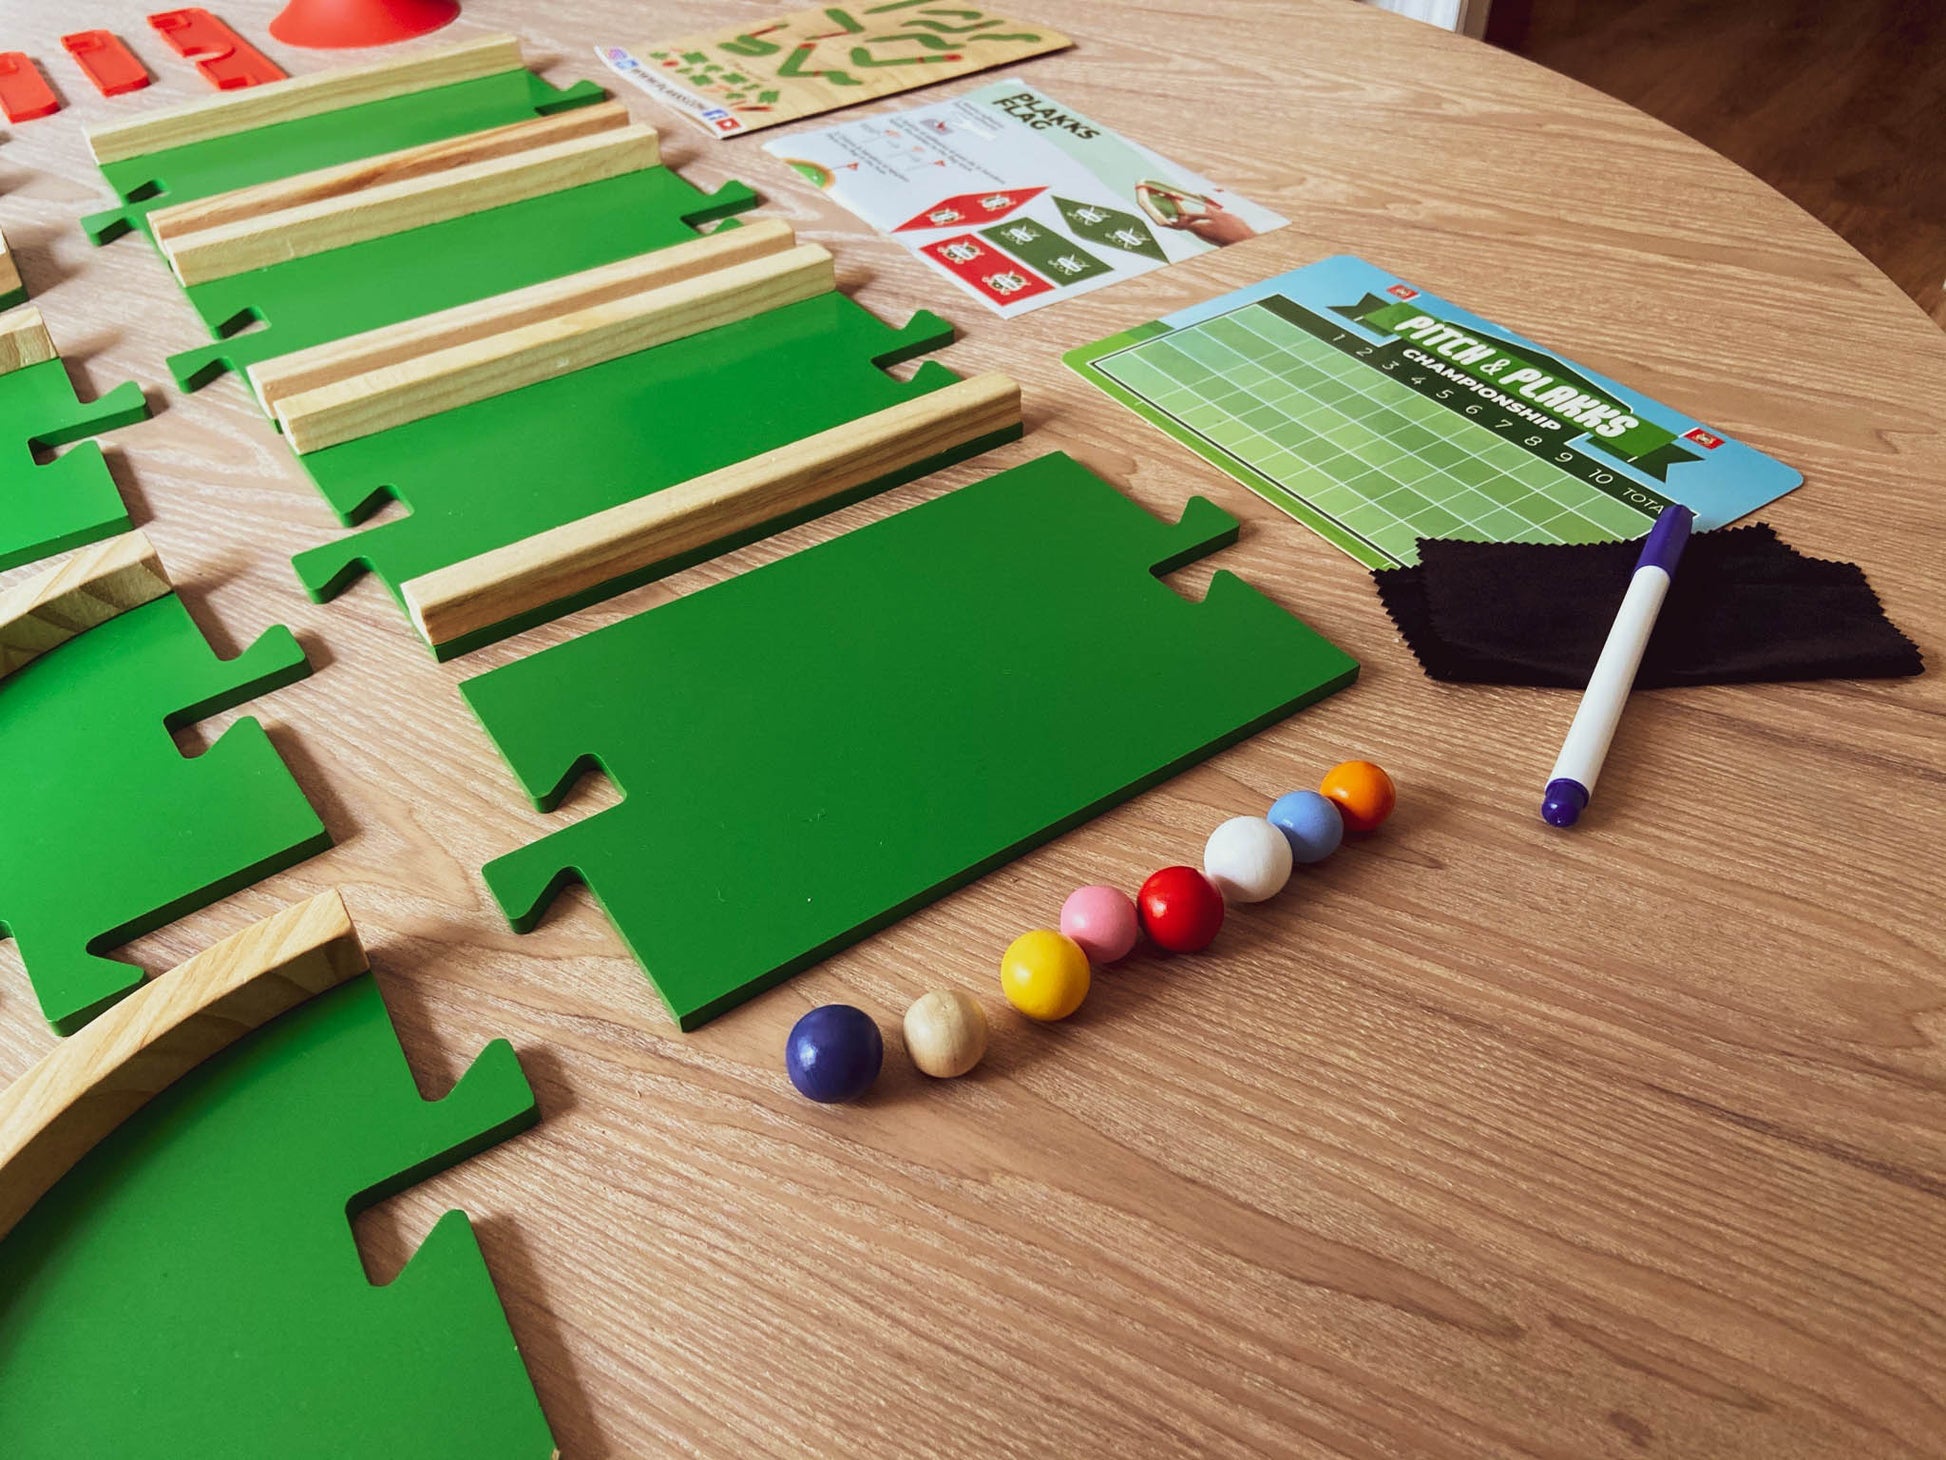 Pitch&Plakks es un juego de mesa con un perfecto diseño y hecho con madera y materiales sostenibles. Su gran diseño permite que todas las piezas encajen entre ellas para poder crear los circuitos de minigolf más épicos.